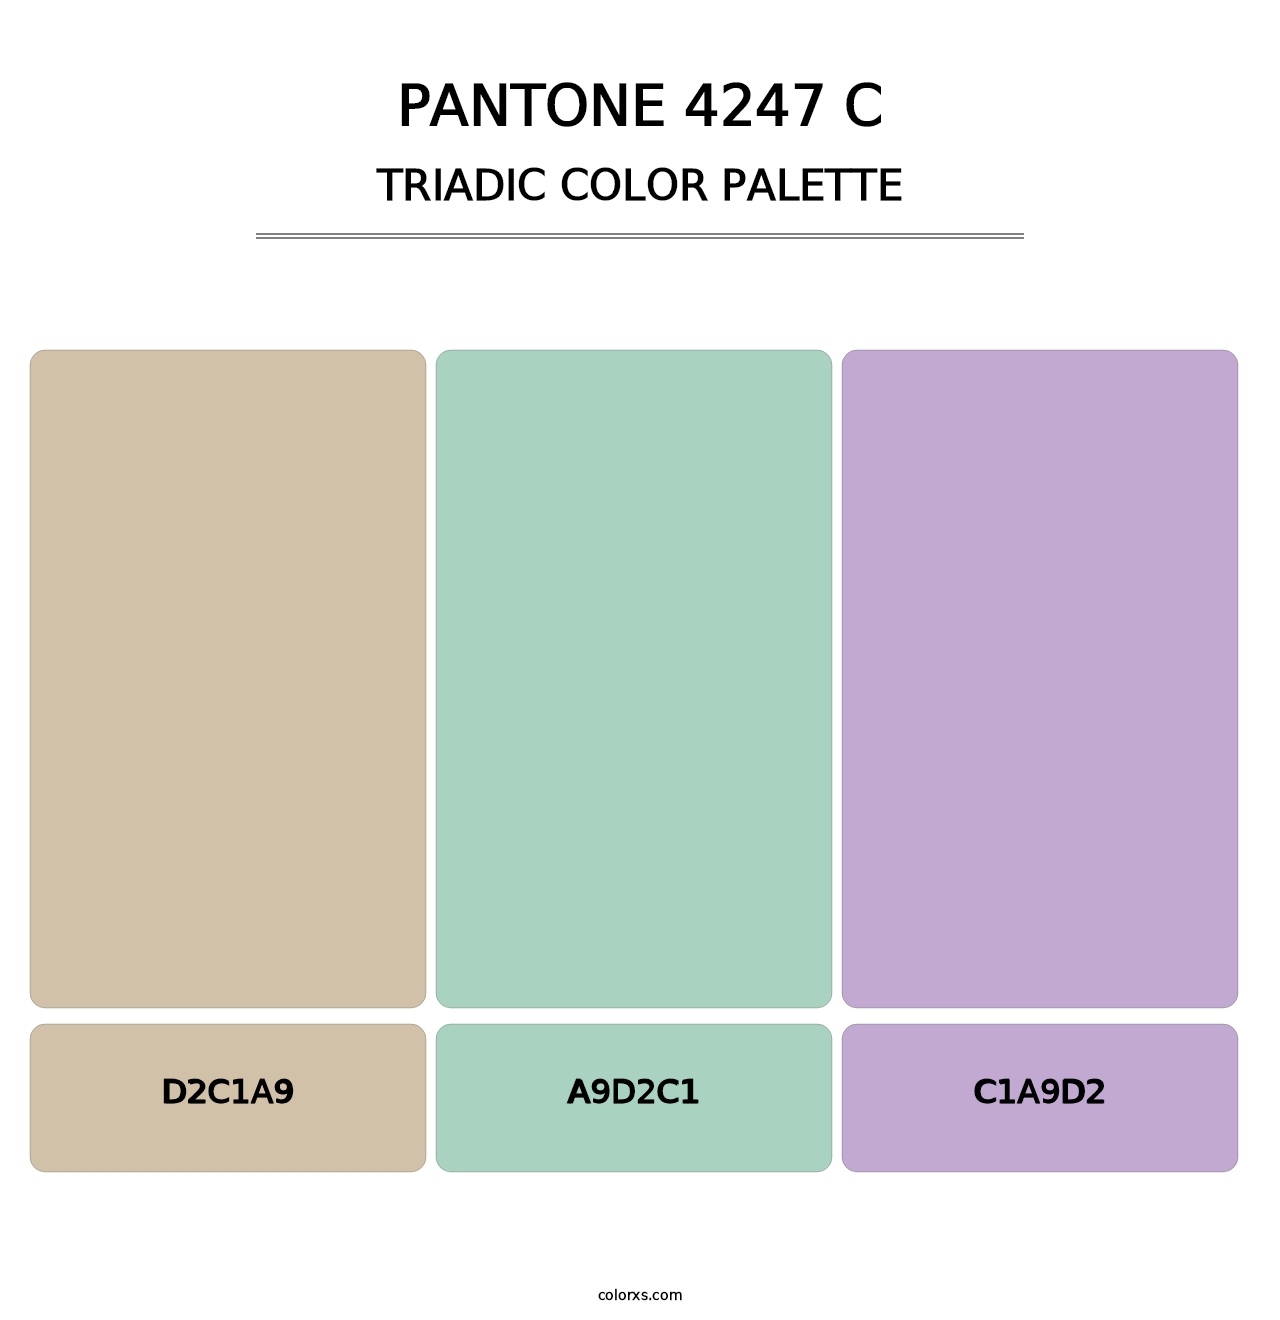 PANTONE 4247 C - Triadic Color Palette